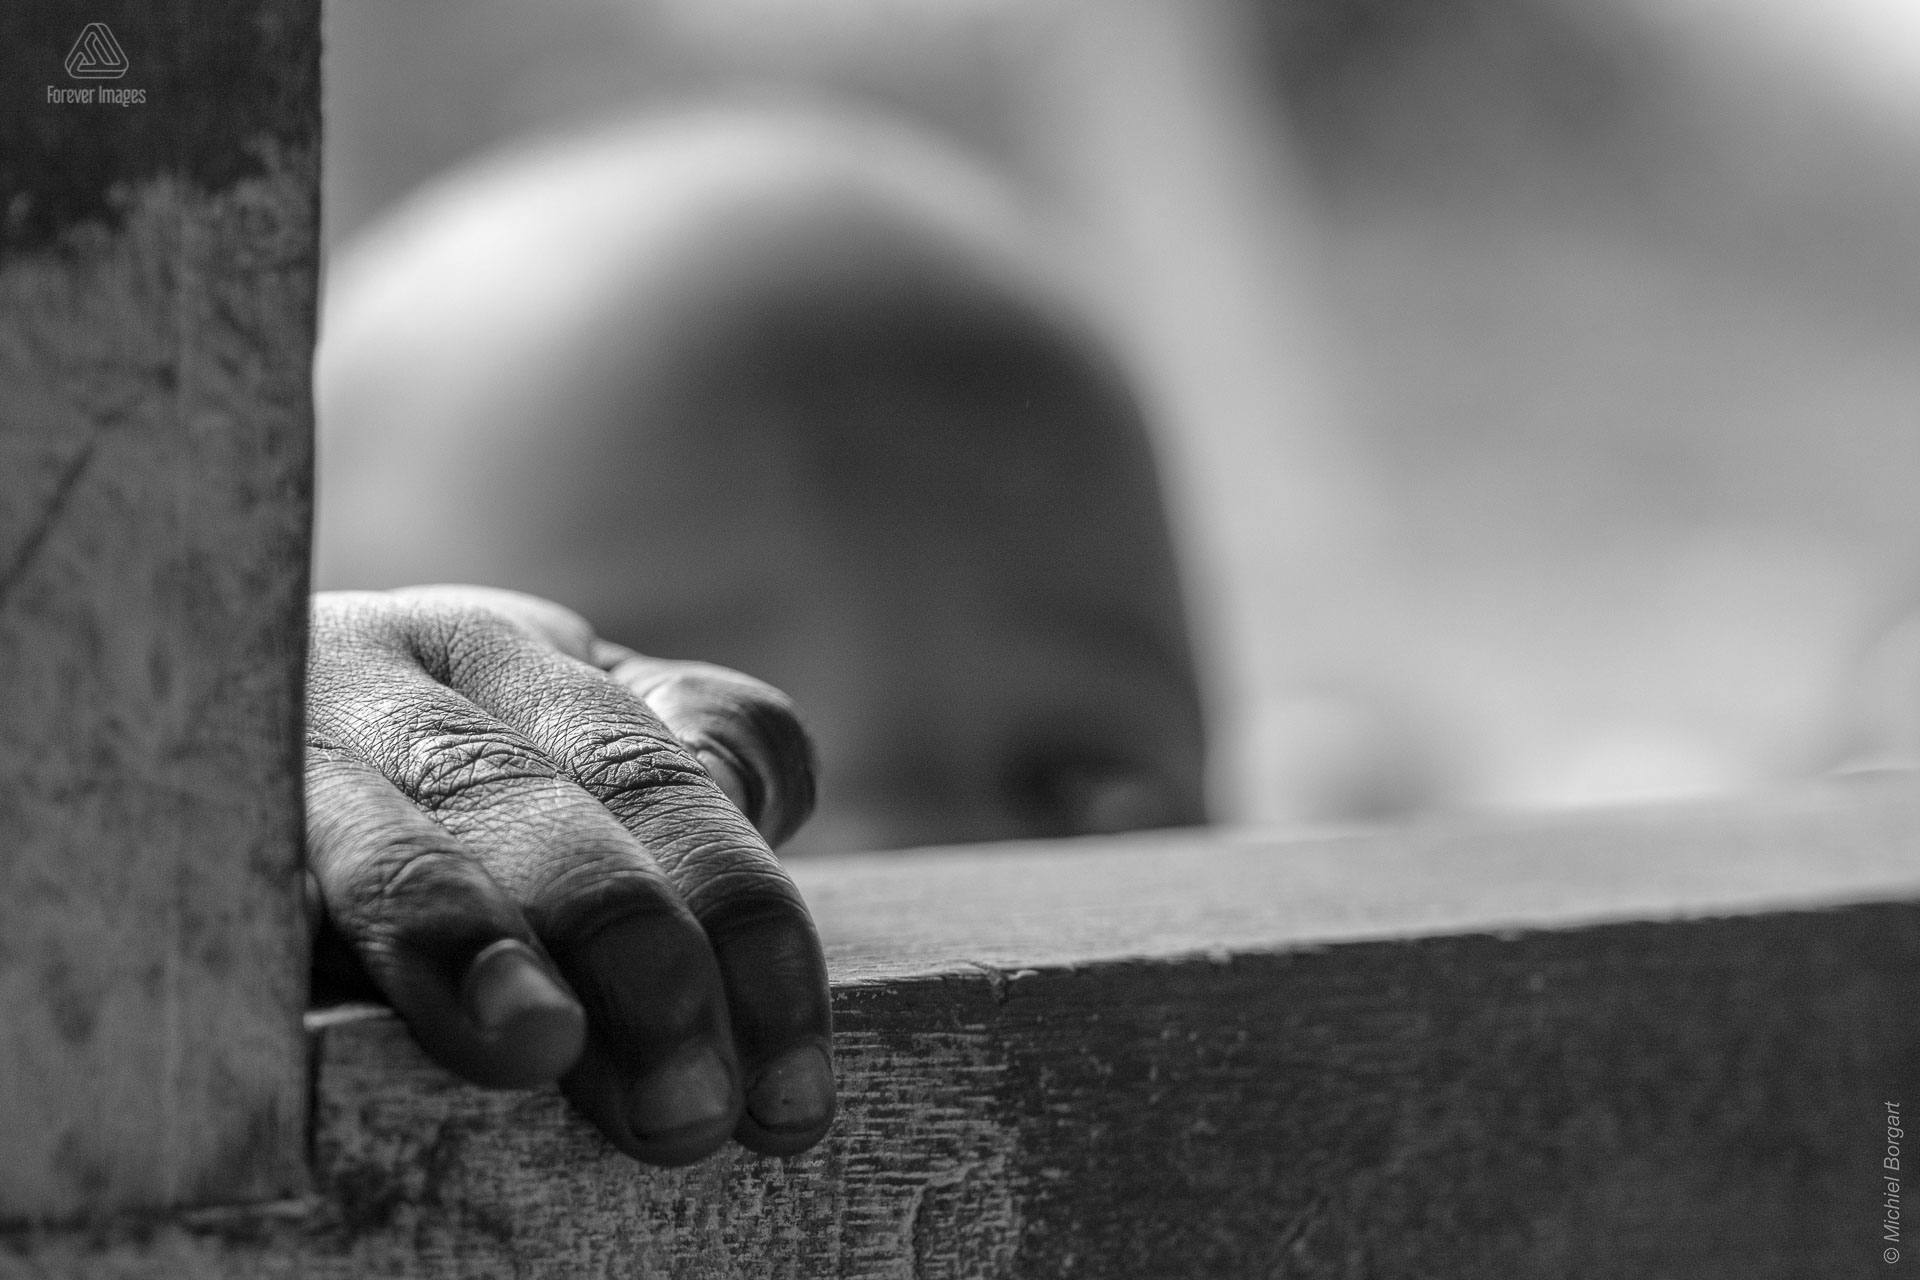 Zwart-witfoto portretfoto kindje dat door venster kerkje naar binnen kijkt Muskathlon van 2015 | Portretfotograaf Michiel Borgart - Forever Images.